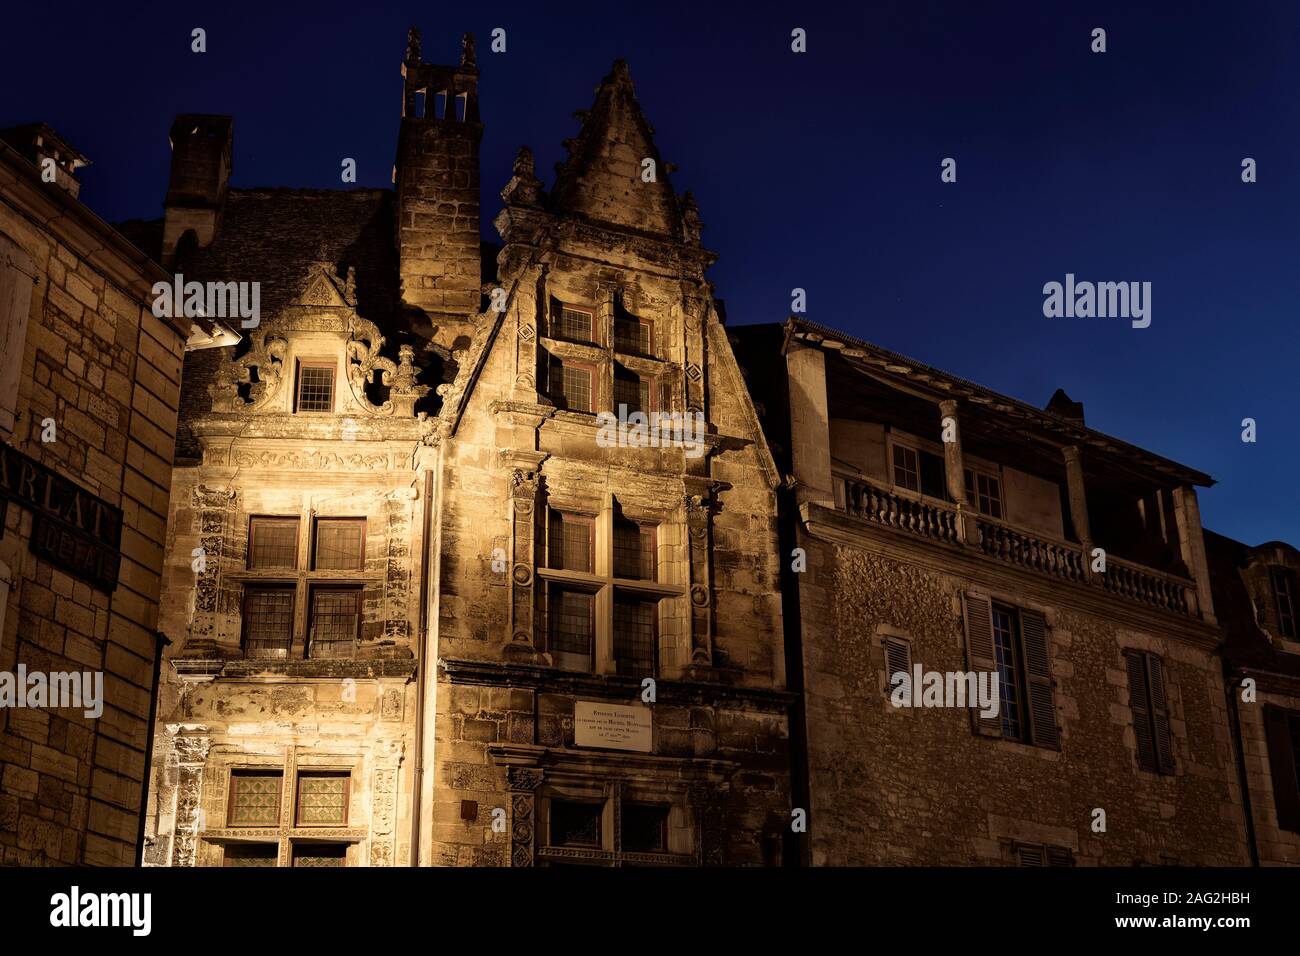 Maison de La Boétie, historischen Gebäude in der Altstadt von Sarlat im Süden von Frankreich. Nächtliche Landschaft, Estienne de LaBoétie Maison, Sarlat-la-Canéda, Dordogn Stockfoto